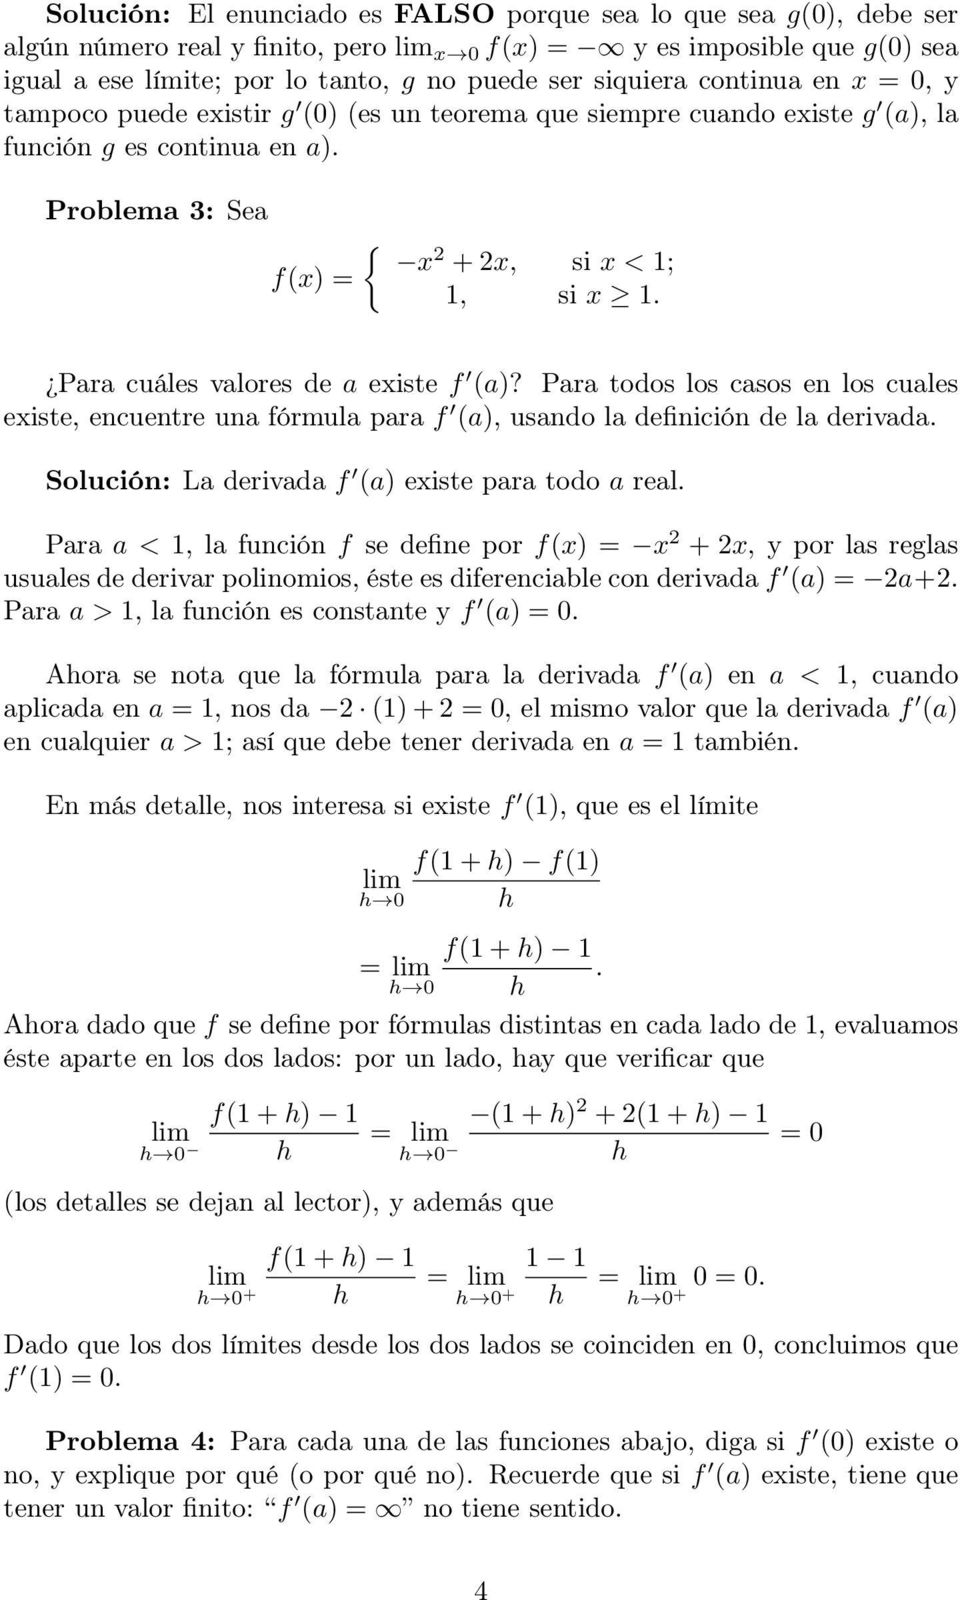 Para cuáles valores de a existe f (a)? Para todos los casos en los cuales existe, encuentre una fórmula para f (a), usando la definición de la derivada.